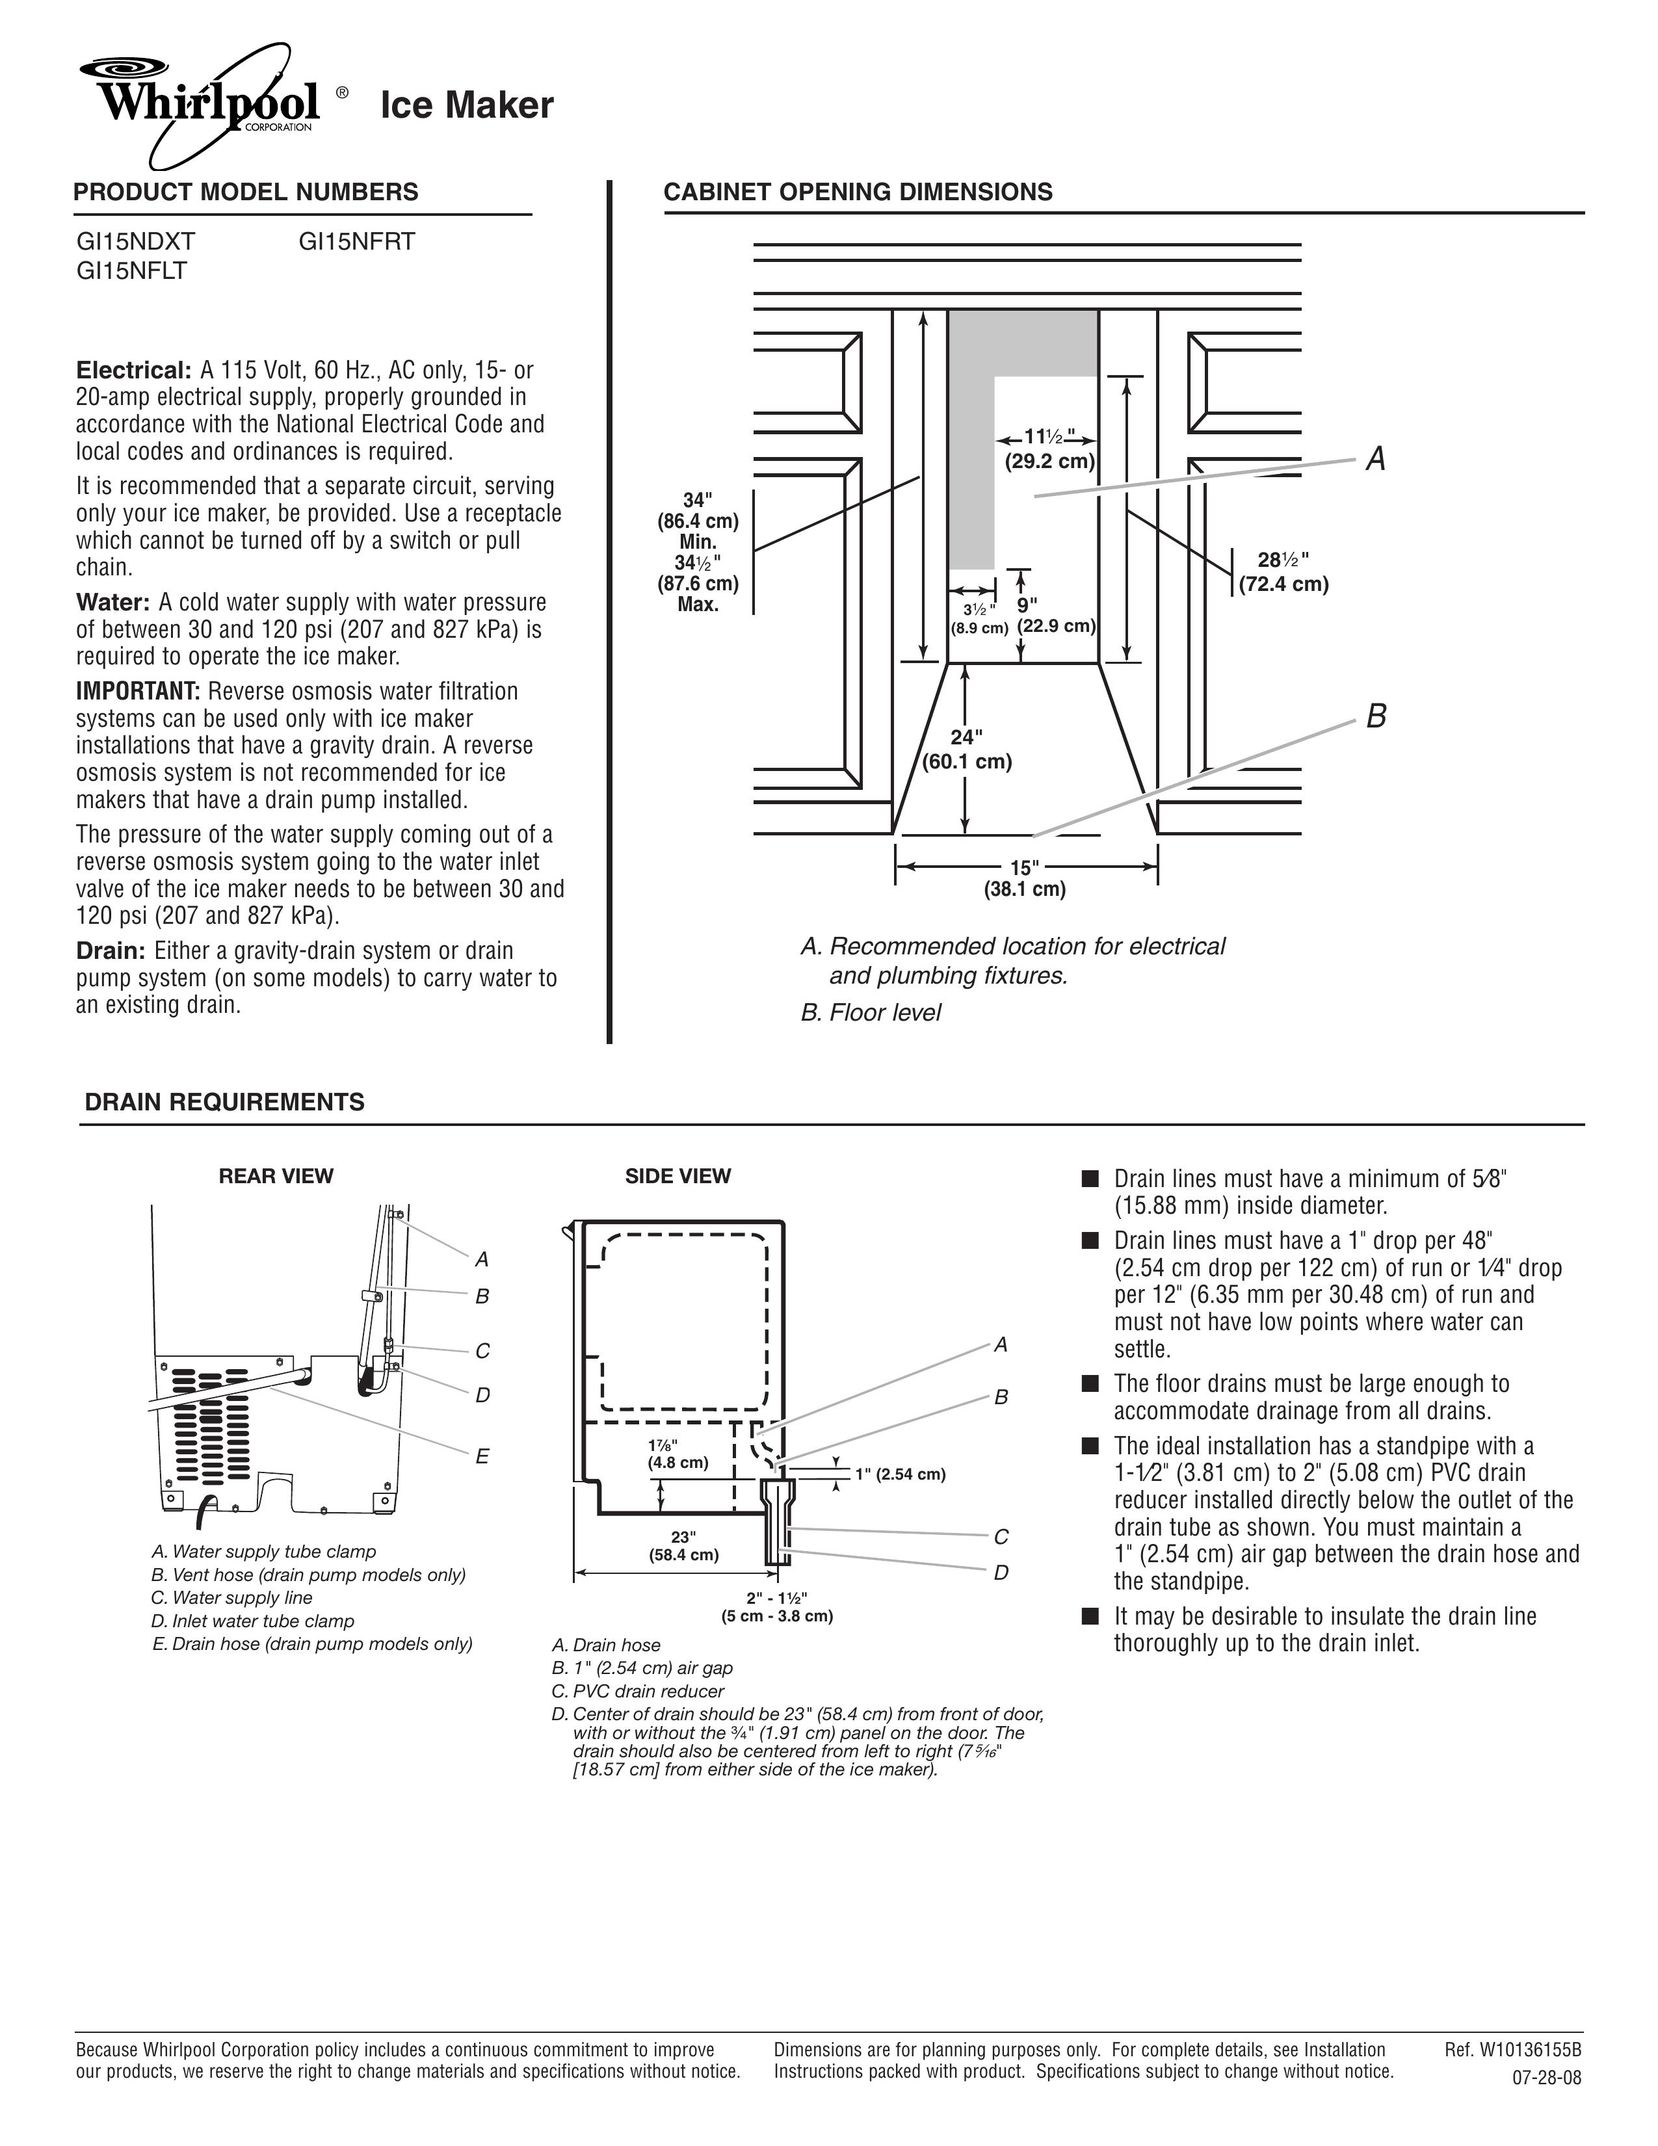 Whirlpool GI15NFRT Ice Maker User Manual